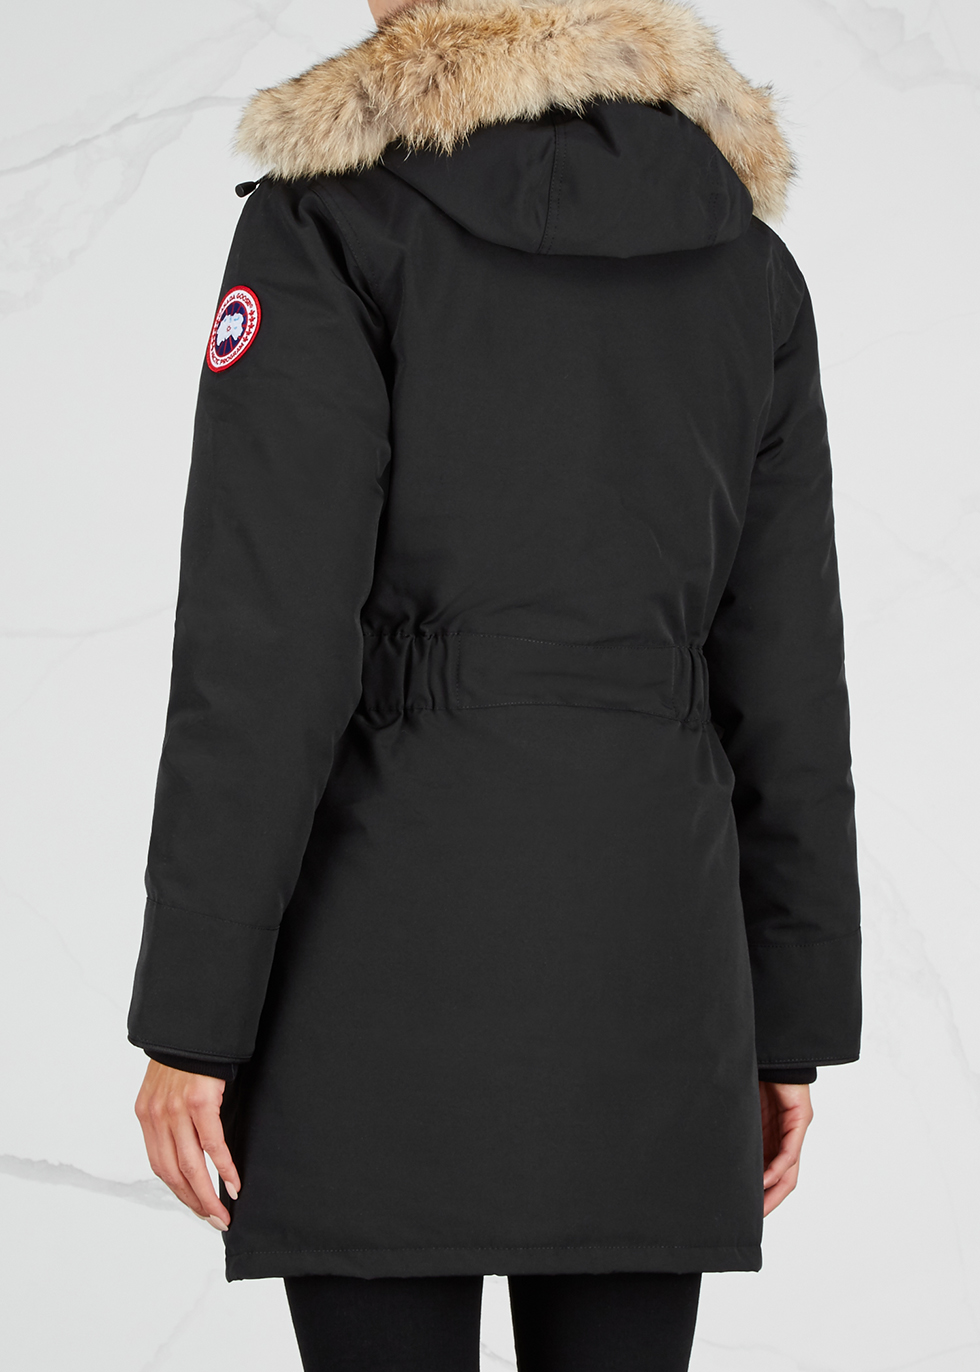 Canada Goose Trillium Parka Jacket Wintercoat in Black Womens Coats Canada Goose Coats 